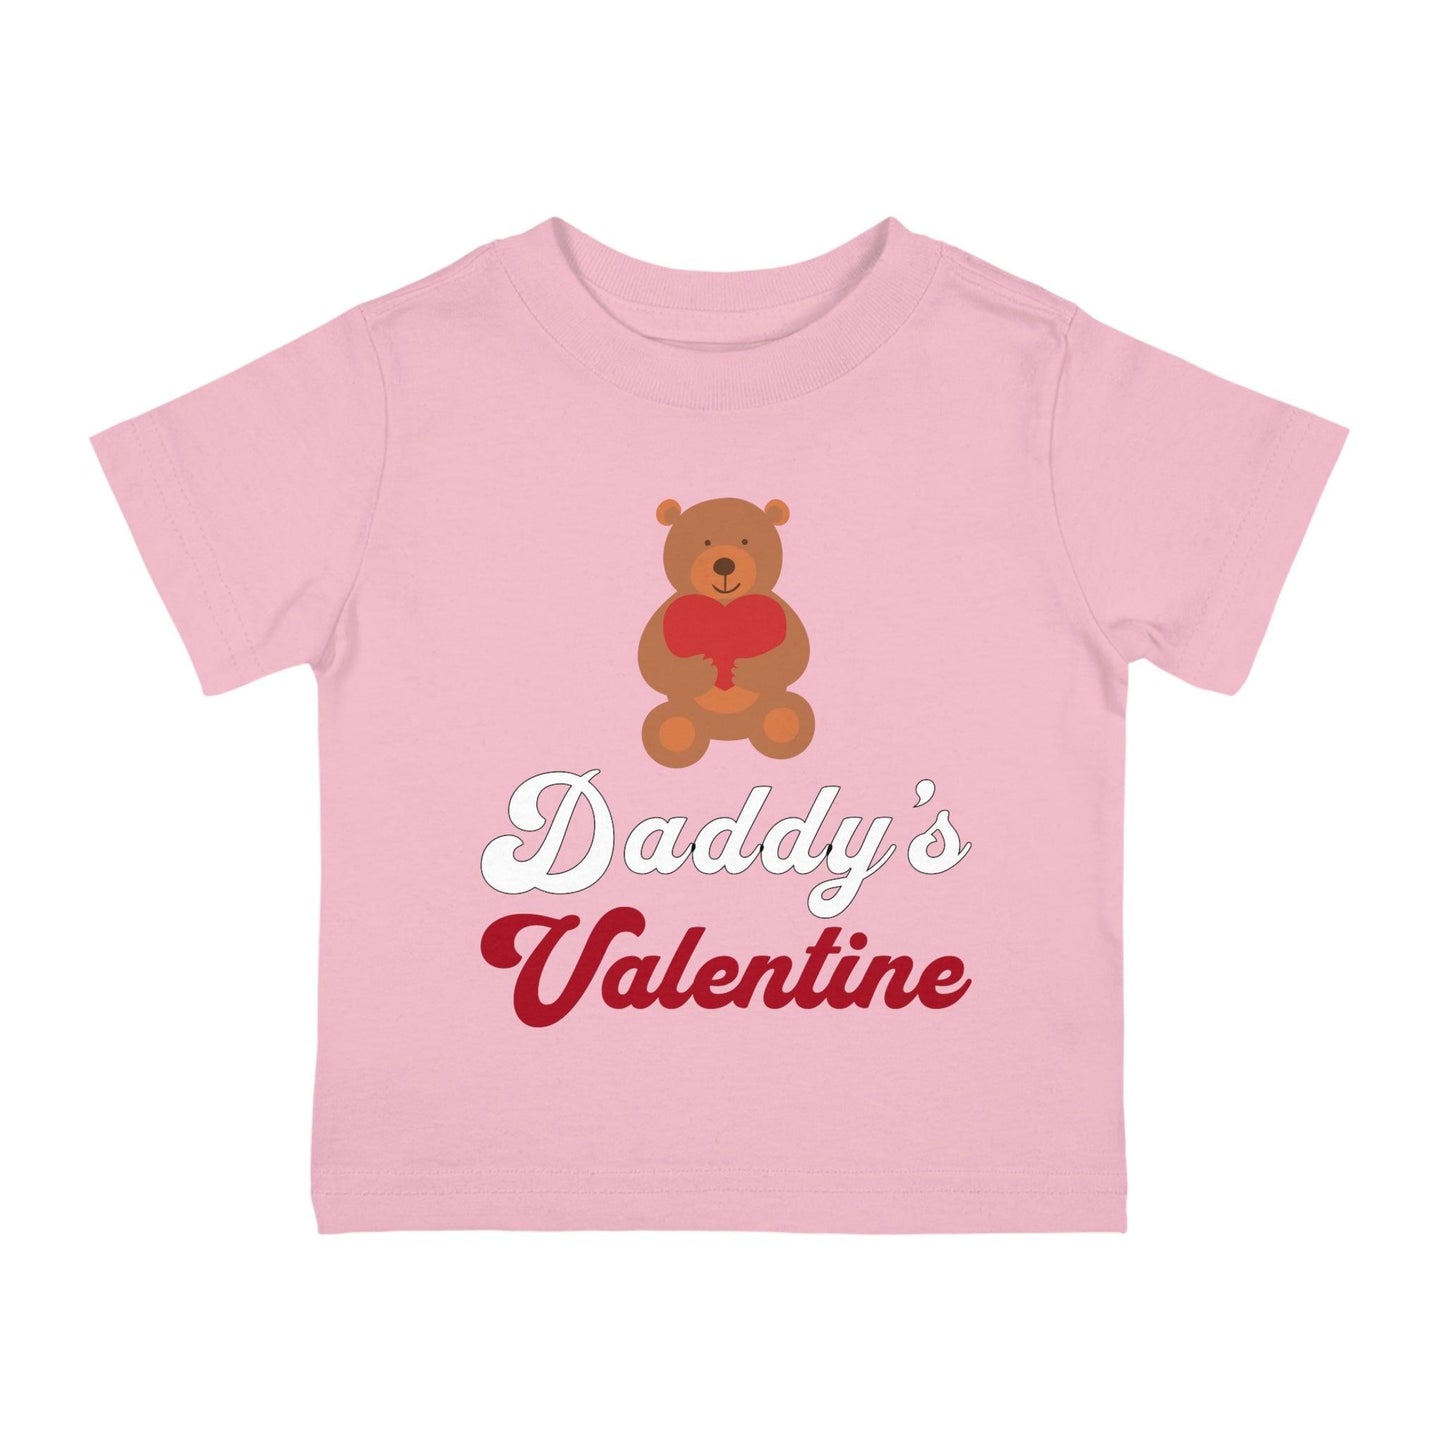 Daddy's Valentine - Kids Valentine day shirt